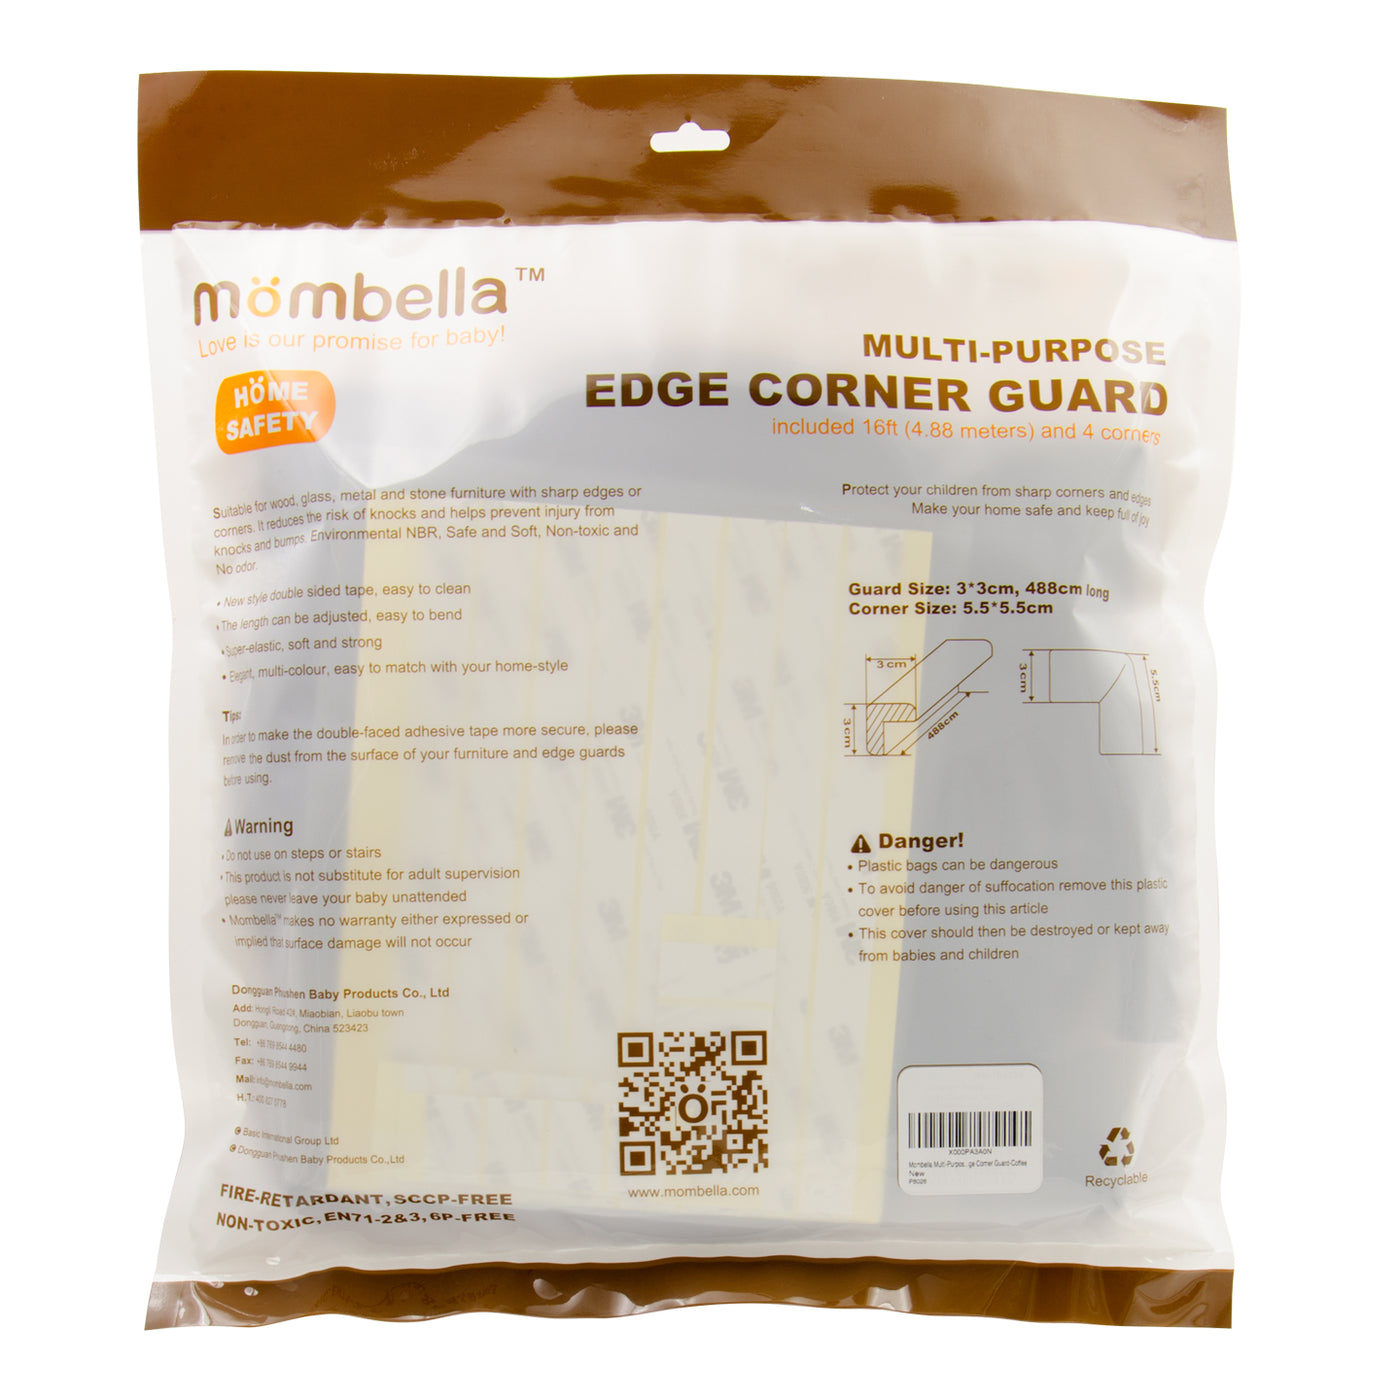 MOMBELLA Multi-purpose edge corner guard 16ft and 4 corners Home safety Coffee Color - mombella